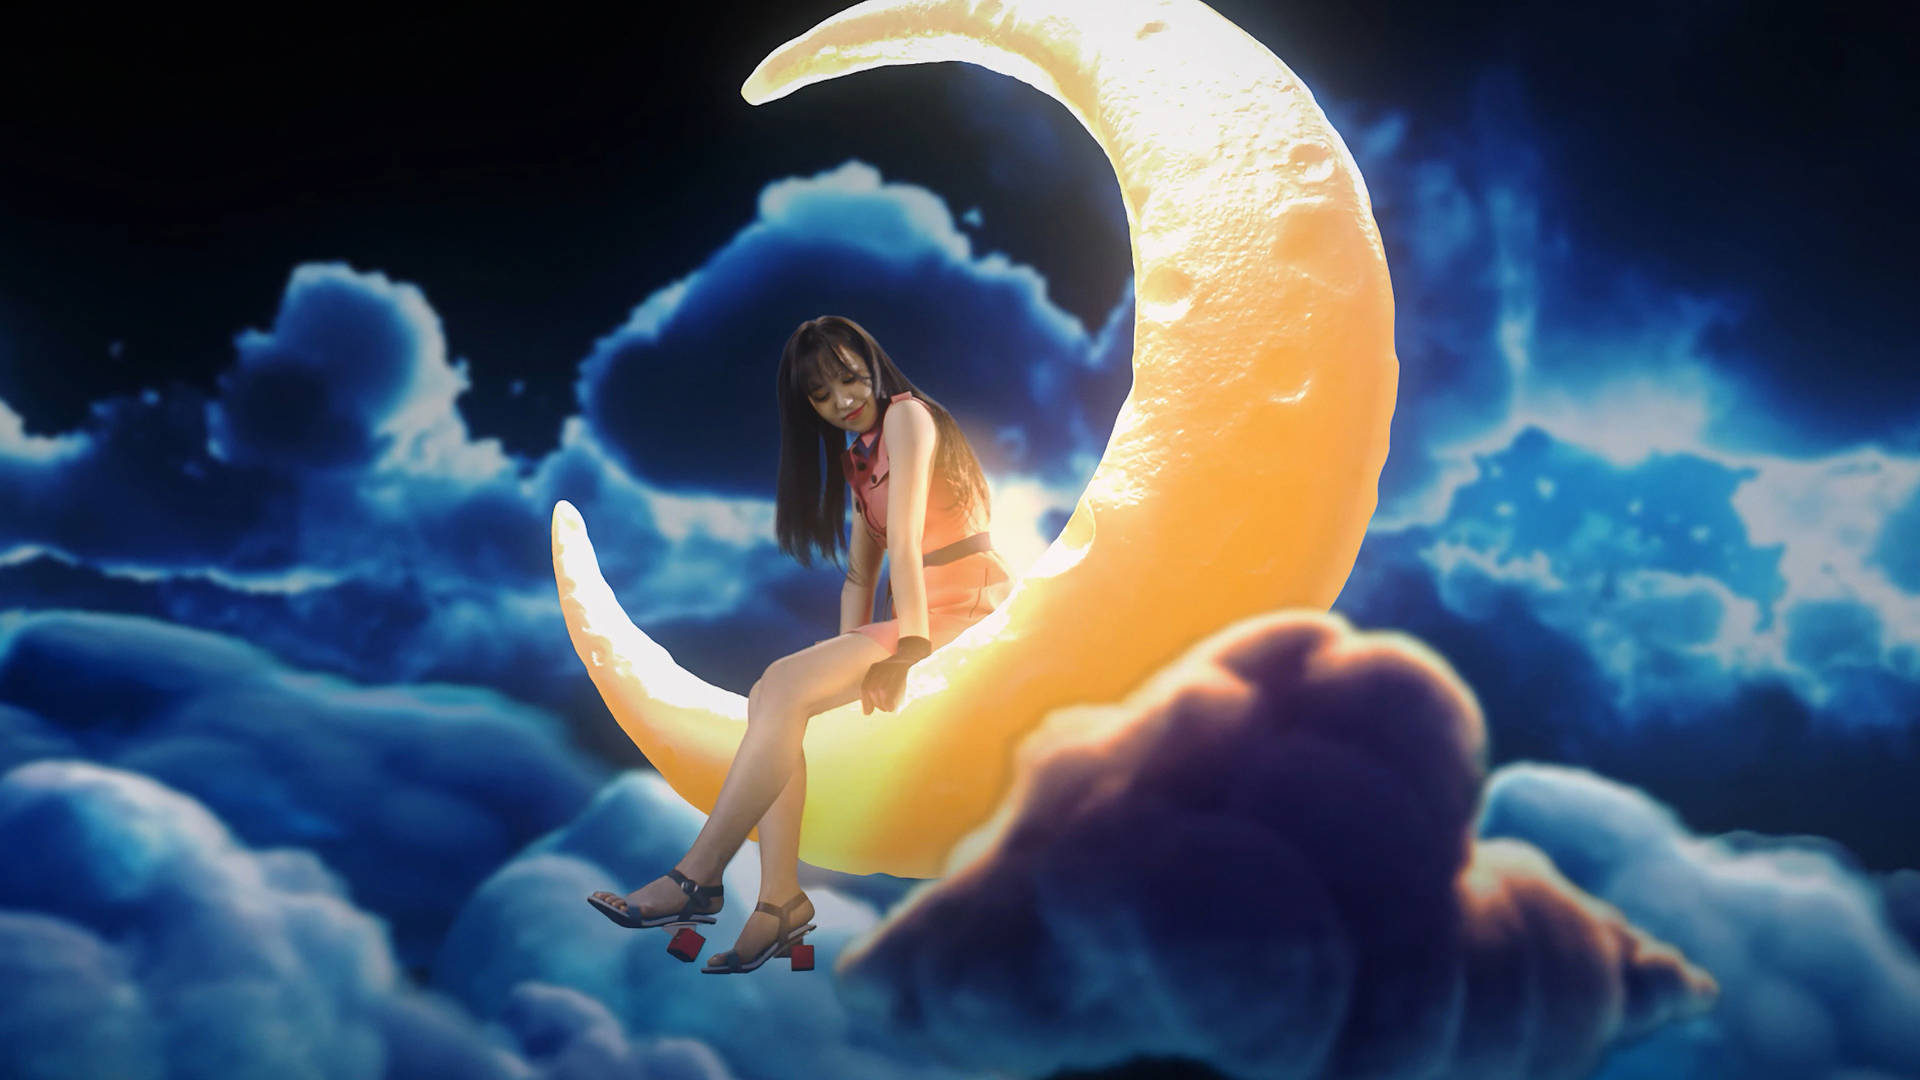 Red Velvet Wendy On Moon